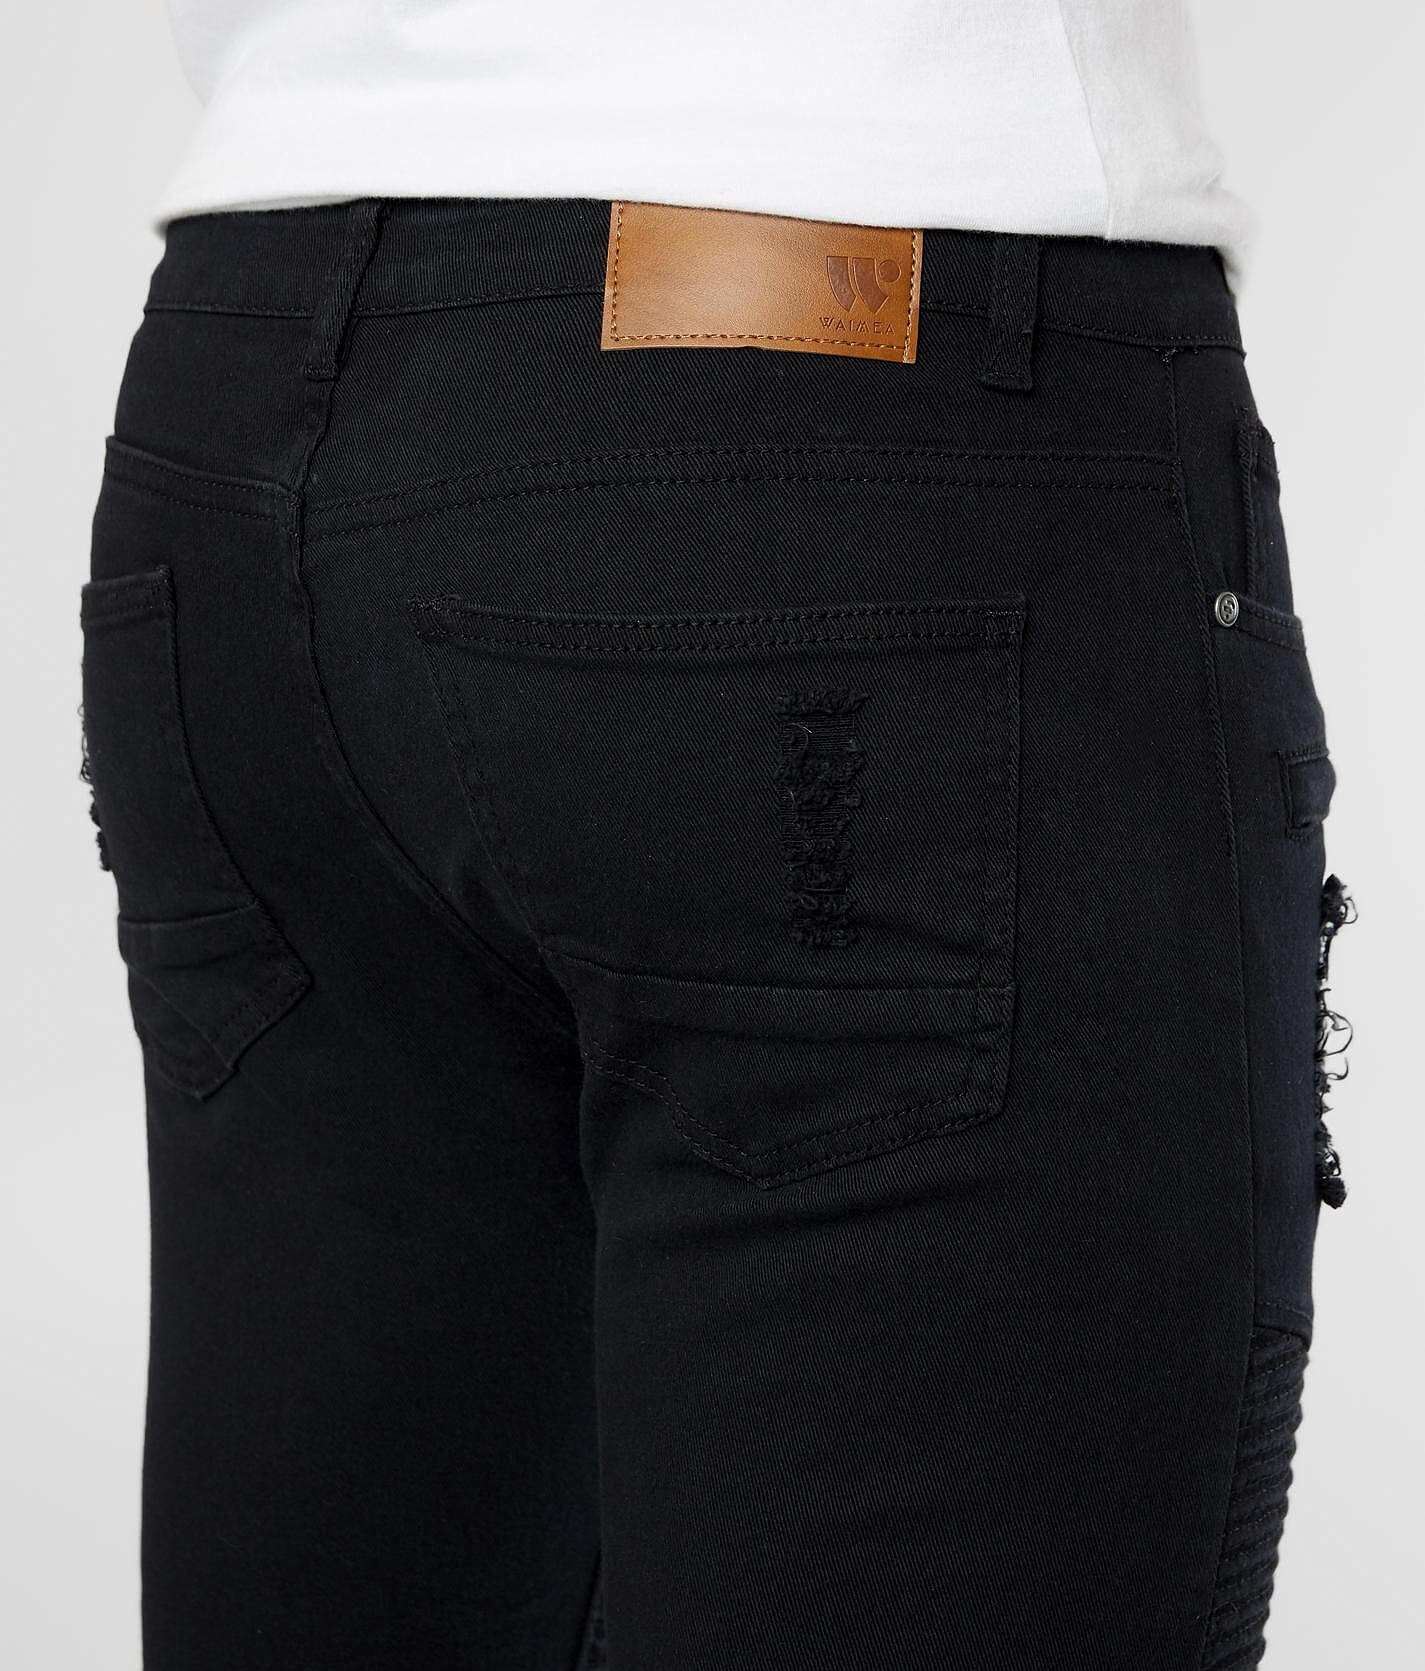 waimea design jeans